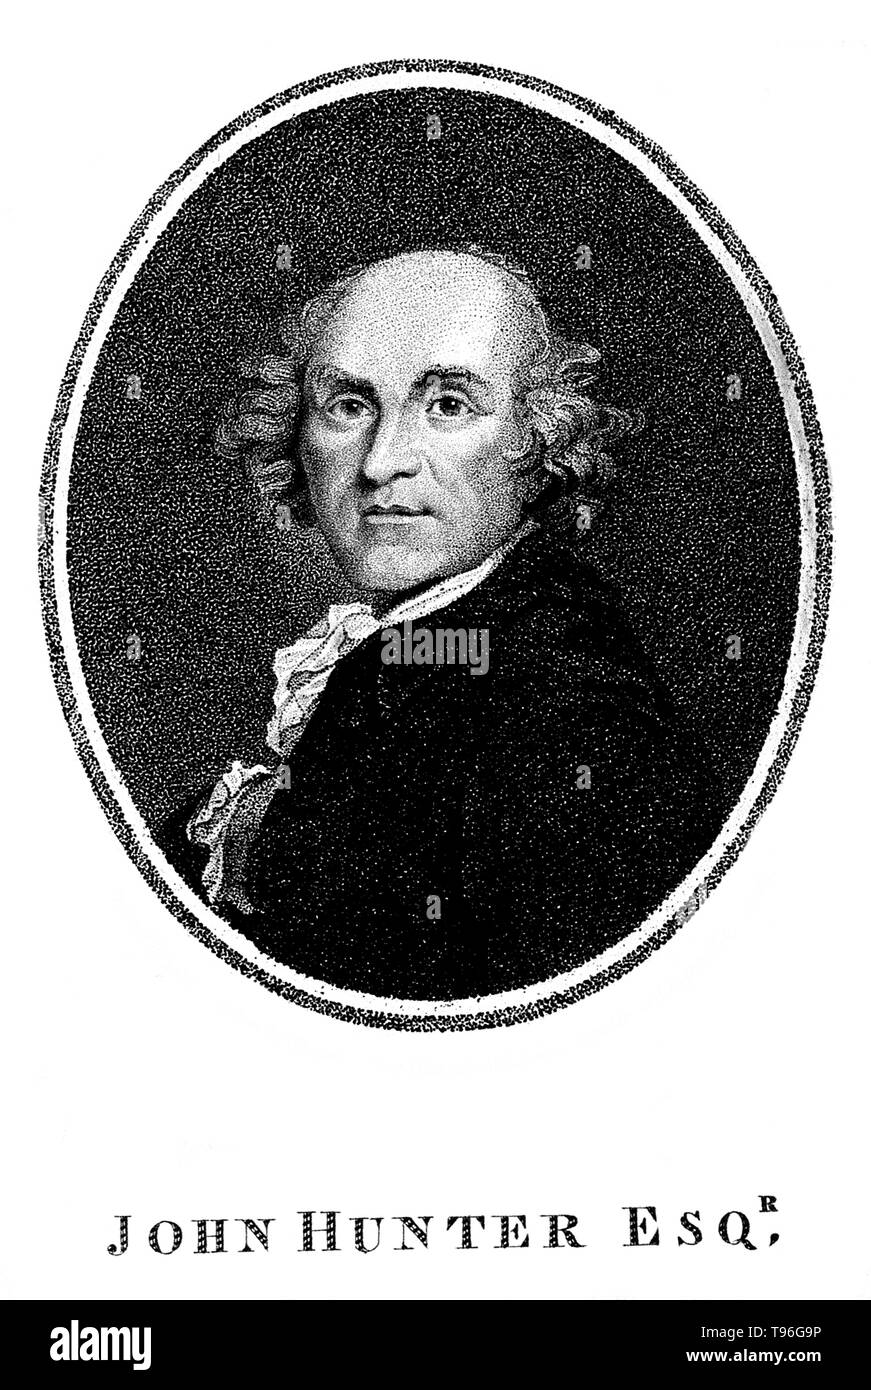 John Hunter (Février 13, 1728 - Octobre 16, 1793) était un chirurgien écossais. Il a été un des premiers défenseurs de l'observation attentive, la méthode scientifique en médecine, et un excellent anatomiste. Il réunit une collection d'animaux vivants dont les squelettes et autres organes qu'il a préparé comme des spécimens anatomiques. Sa mort en 1793 à l'âge de 65 ans. Banque D'Images